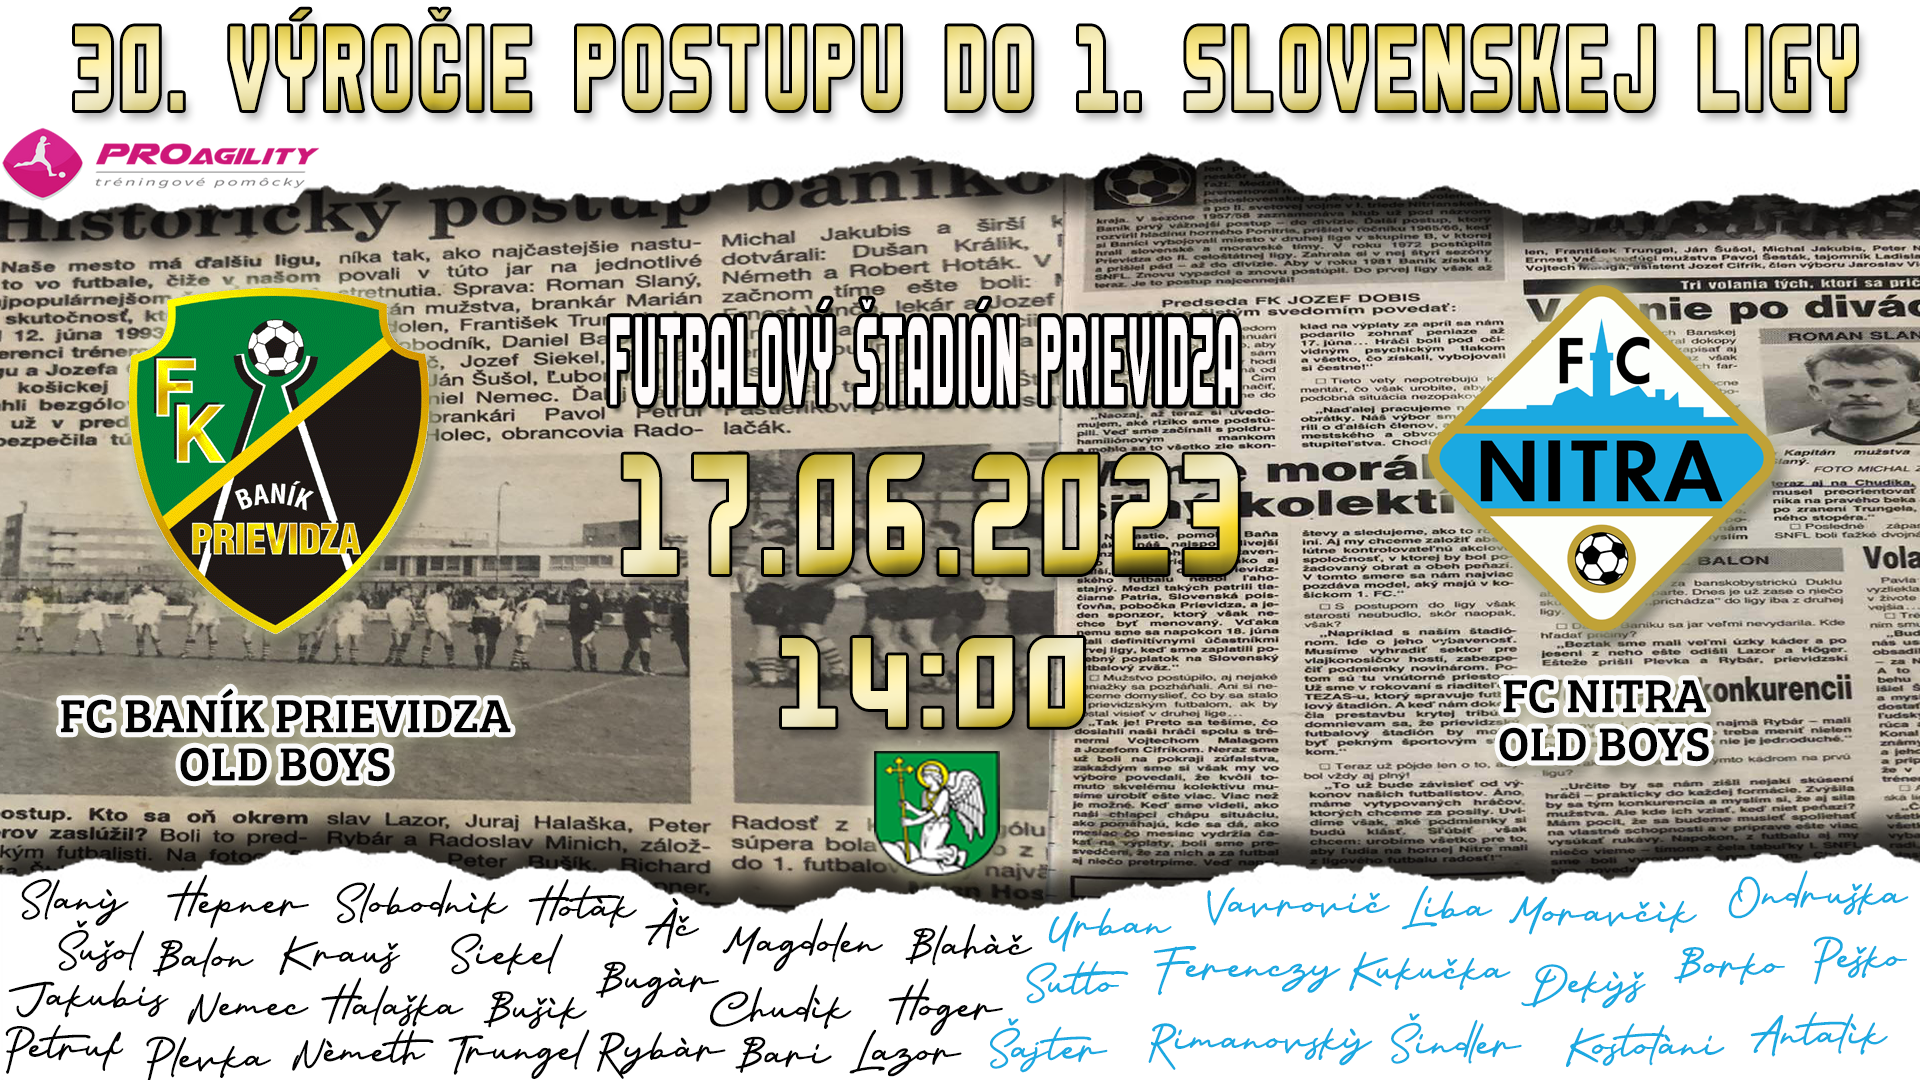 obr: 30. výročie postupu do 1. slovenskej ligy v samostatnej SR